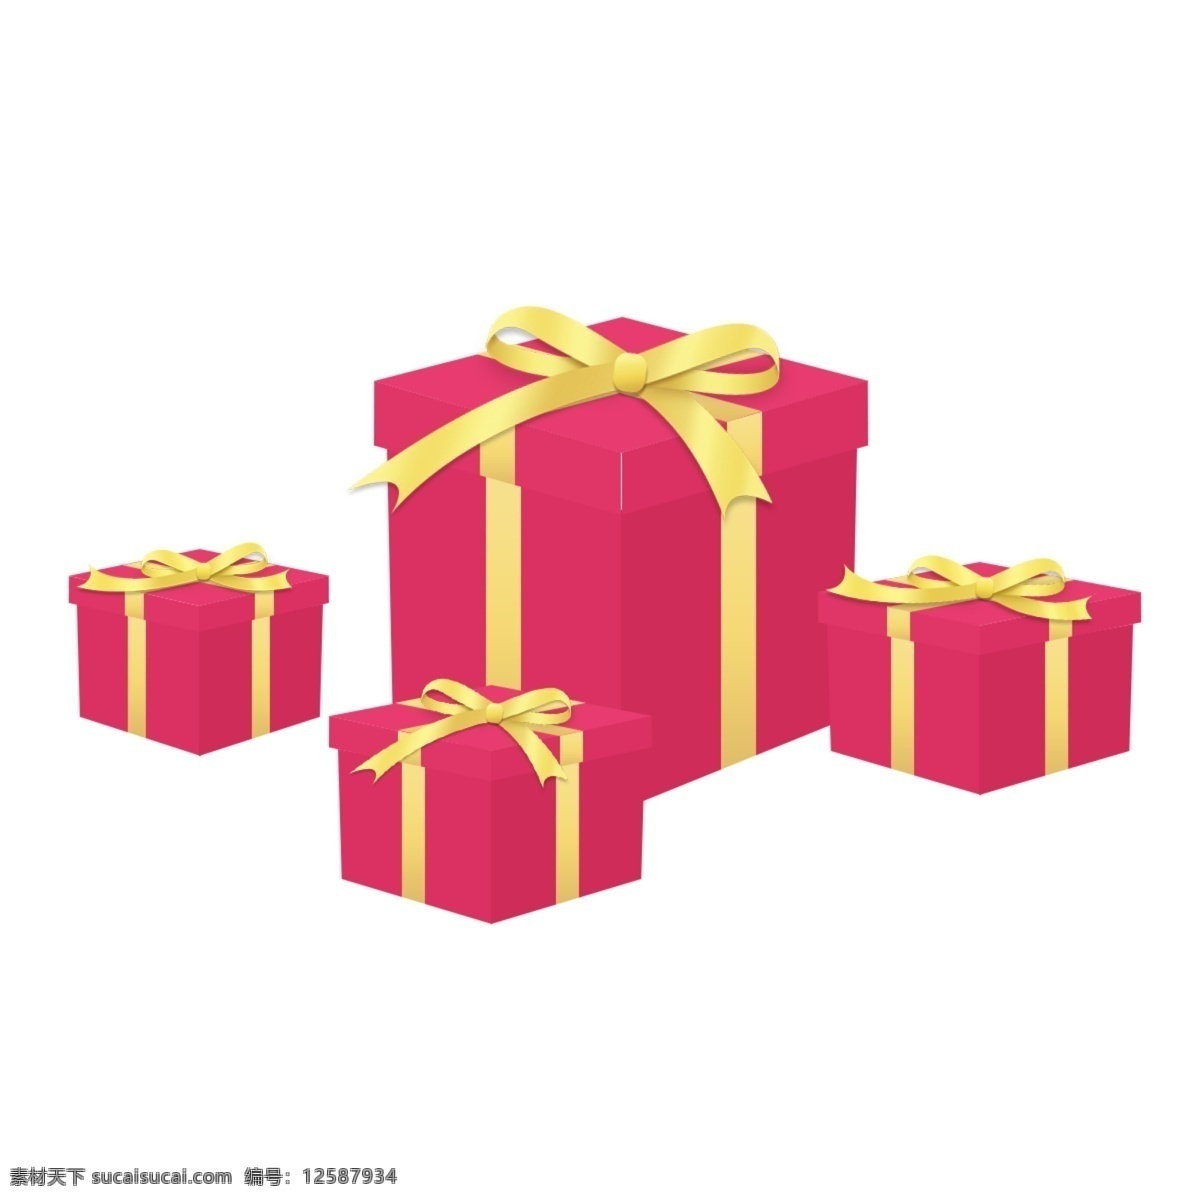 红色礼盒素材 红色礼盒 圣诞节礼盒 圣诞礼盒 红白礼盒 礼盒素材 礼盒 分层素材 分层